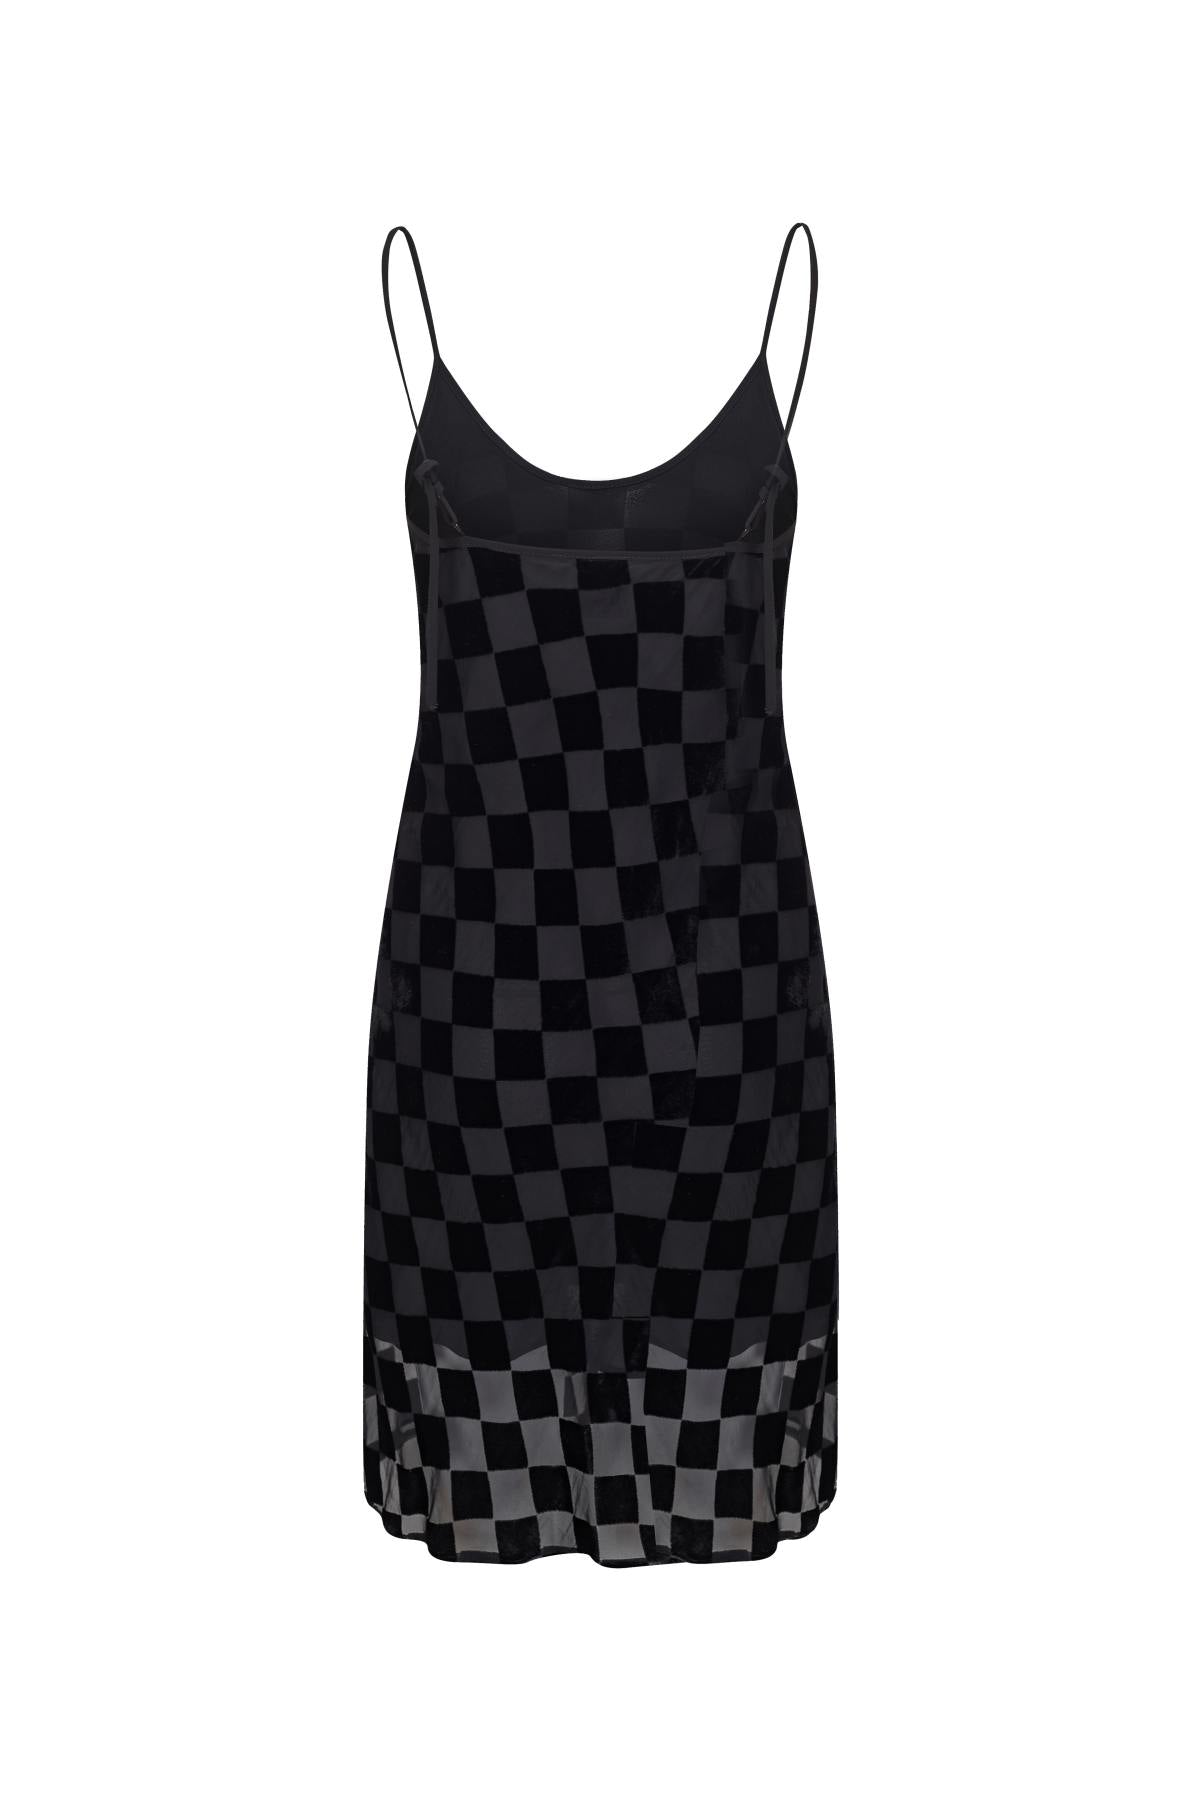 UUNIQ BETH'S CHECKERBOARD Lingerie-style Mini Dress